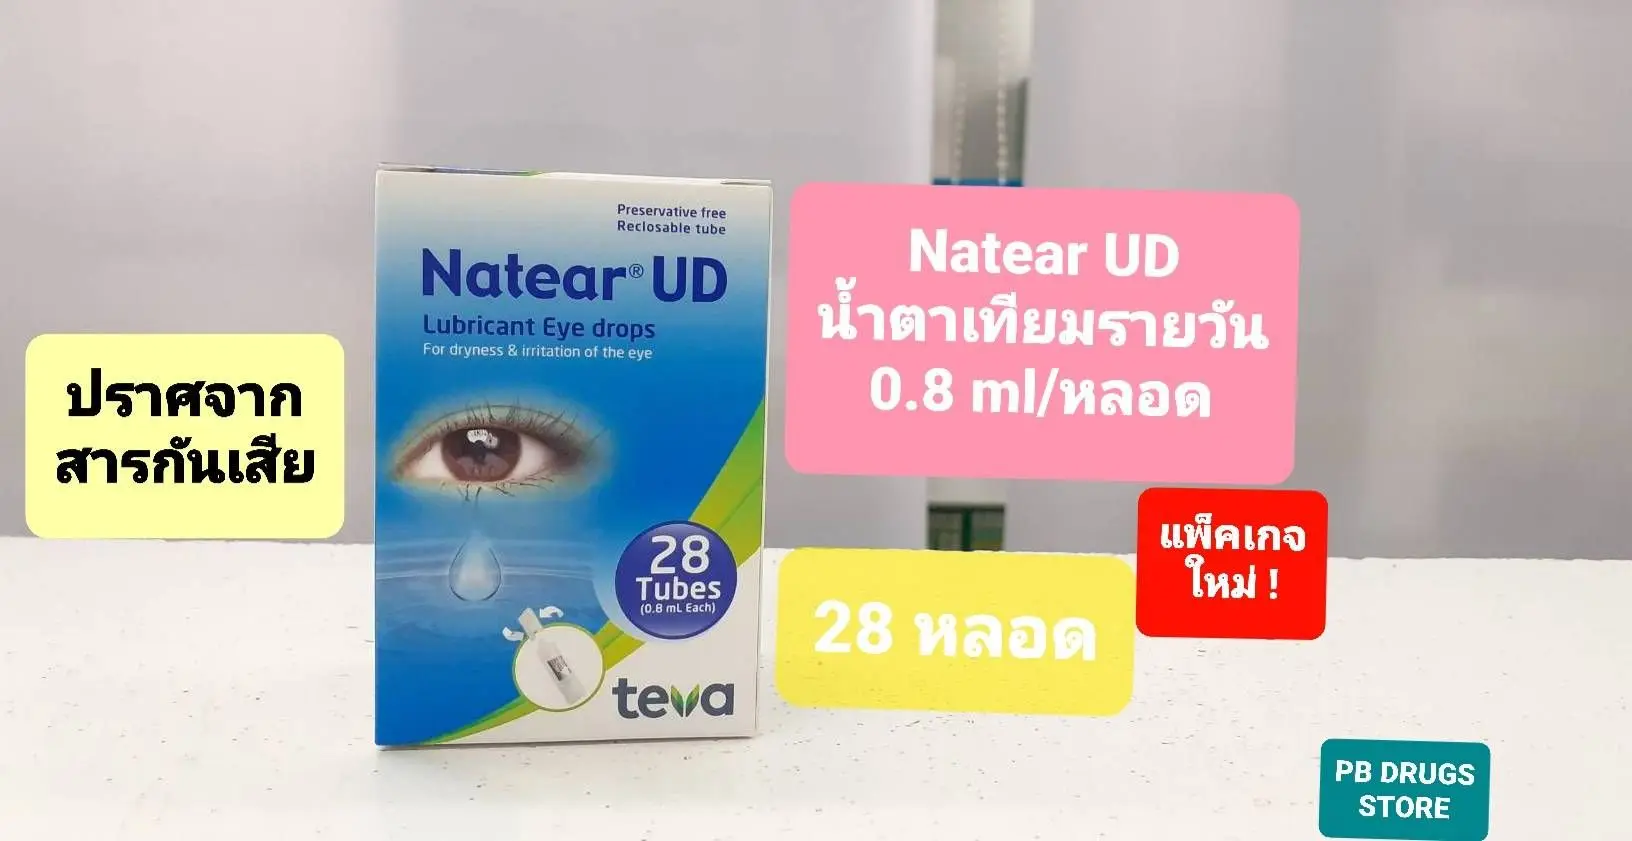 NATEAR UD น้ำตาเทียม แนทเทียร์ ยูดี ไม่ใส่สารกันเสีย บรรจุ 28 หลอด×0.8 ml